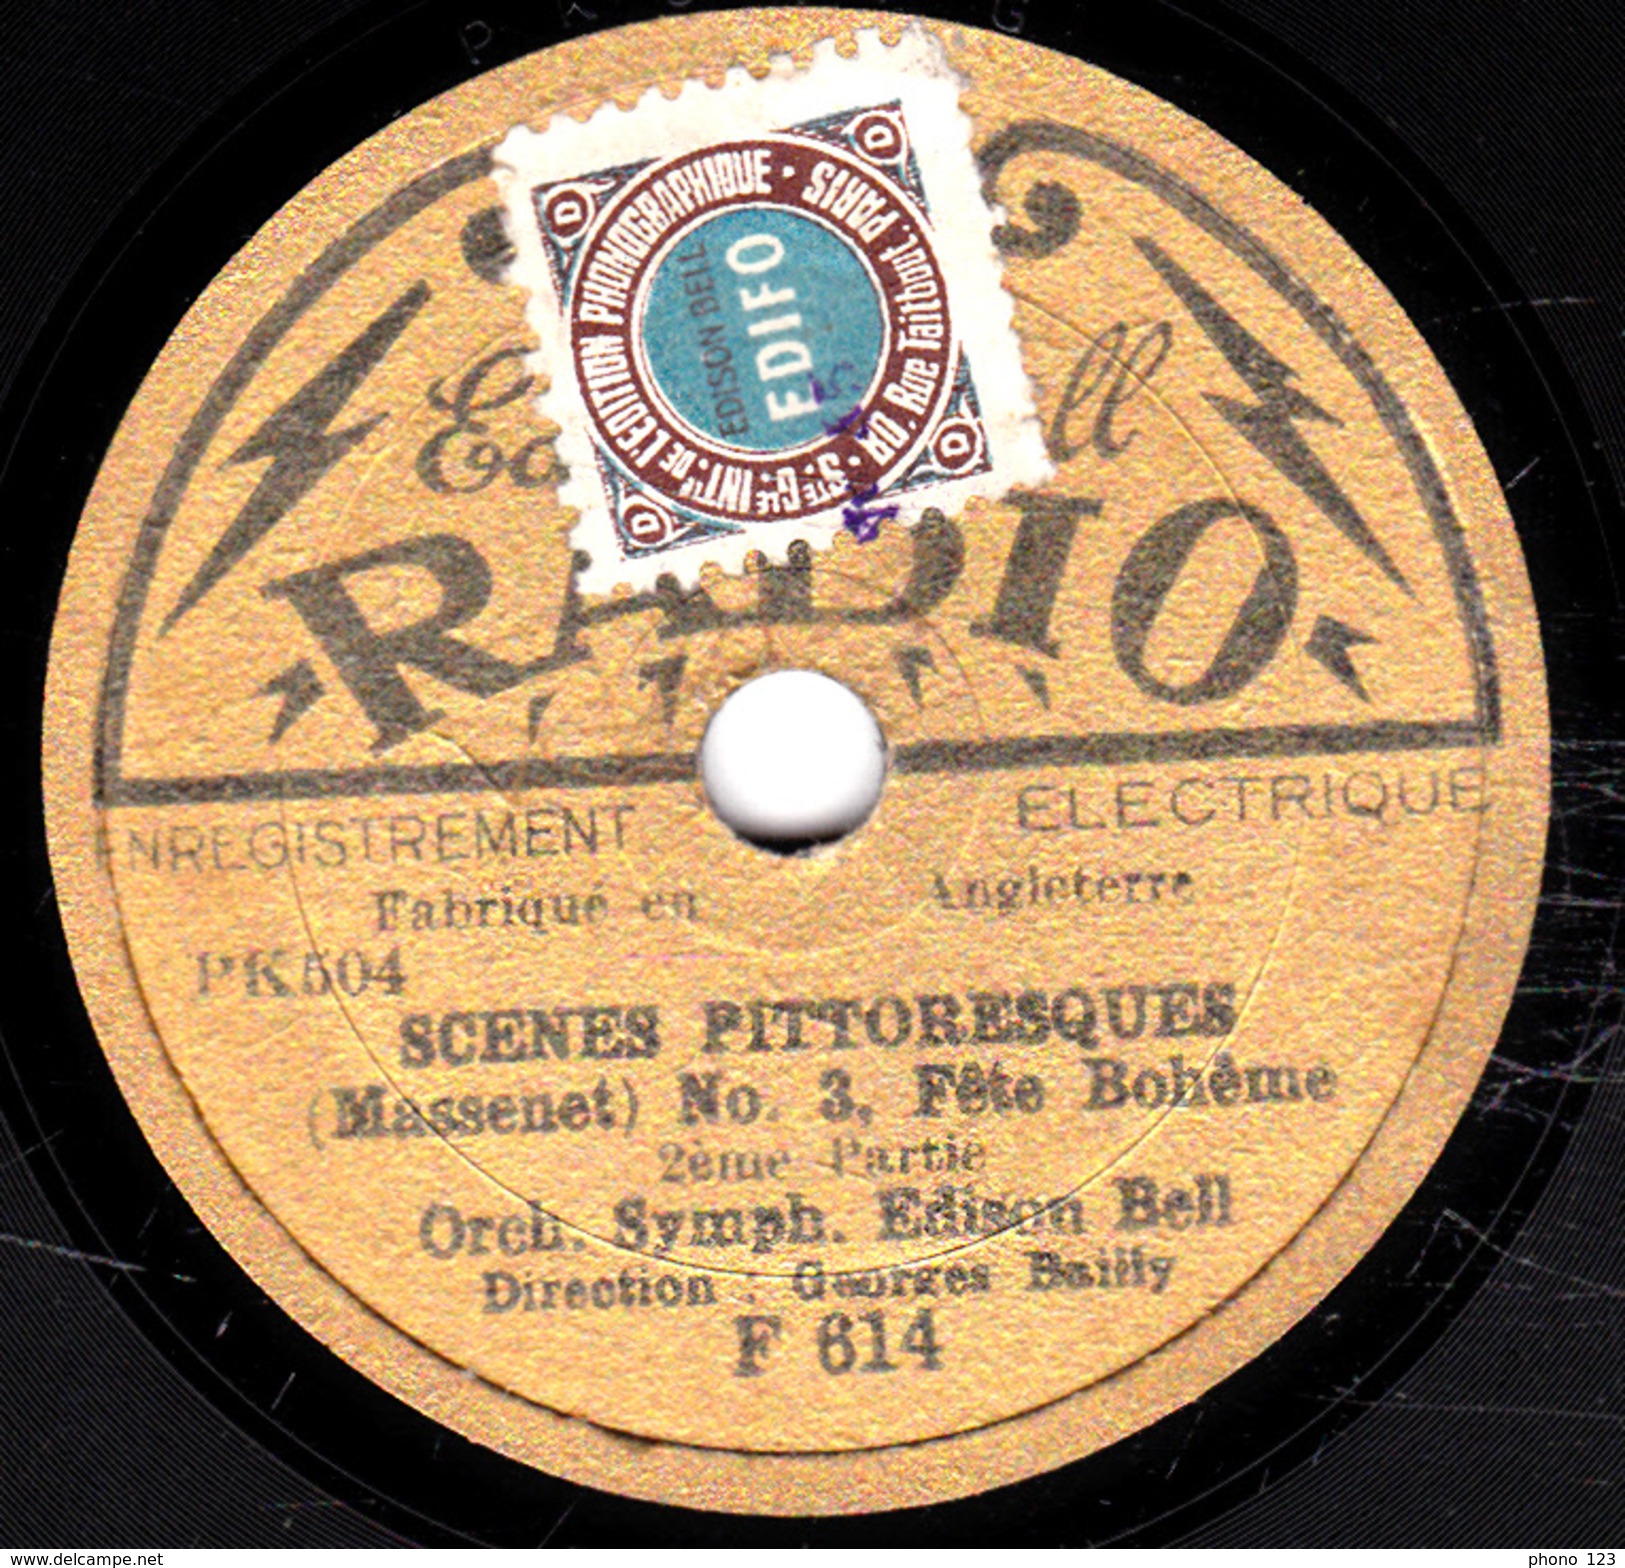 78 T. -  20 Cm - état Tb -  Orch. Symph. Edison Bell - SCENES PITTORESQUES - 1re Et 2e Parties - 78 T - Disques Pour Gramophone